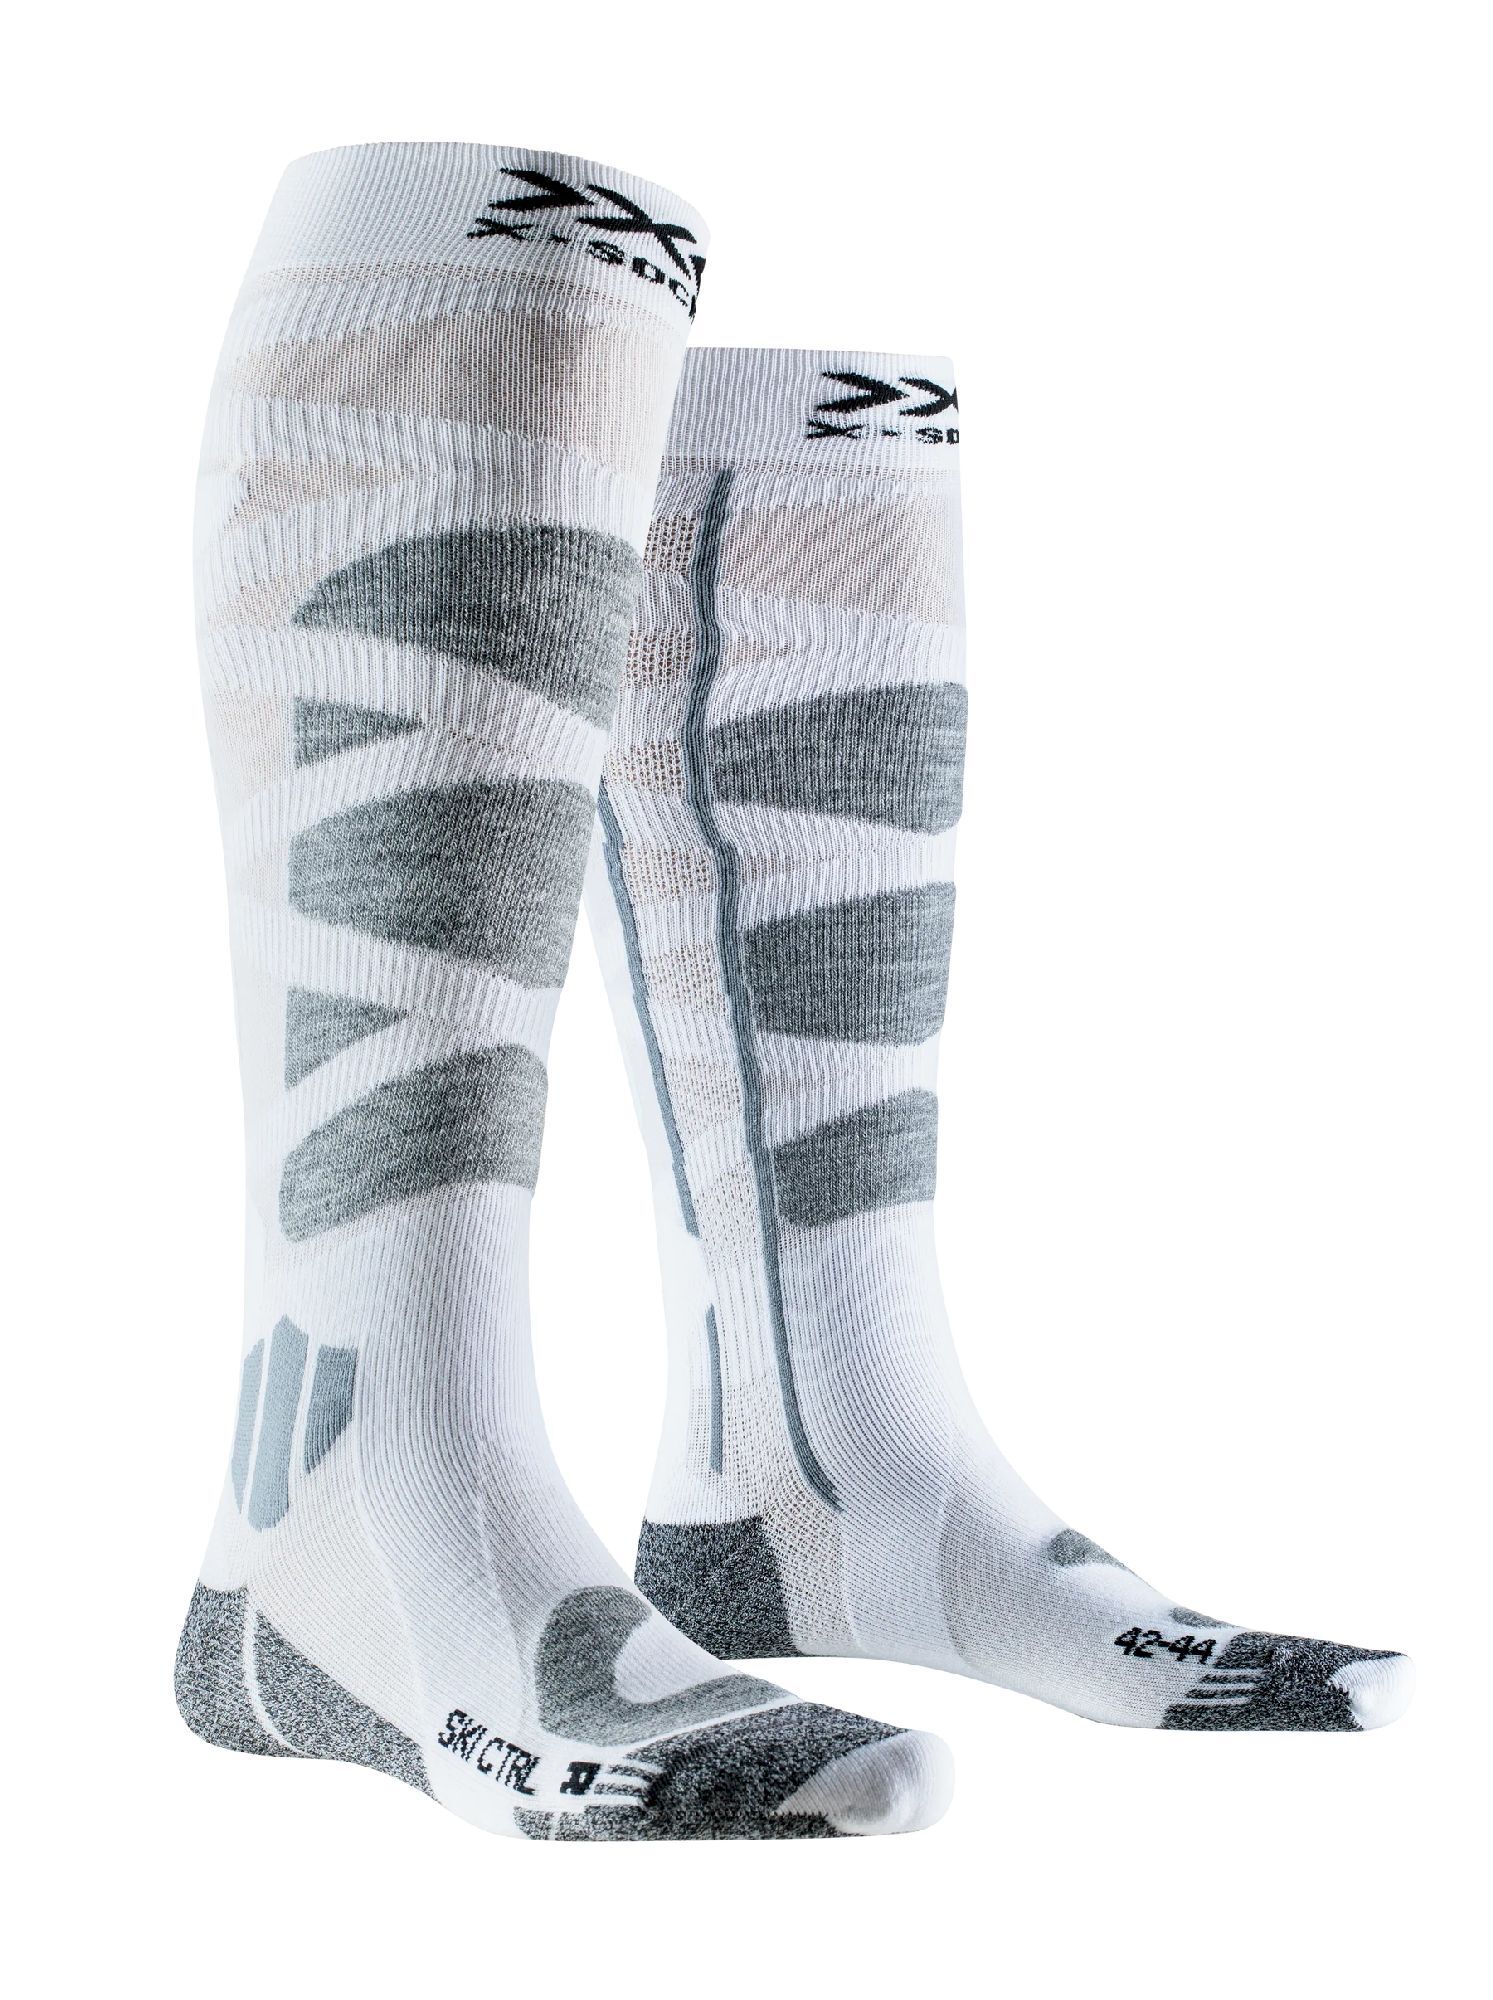 X-Socks Chaussettes Ski Control 4.0 - Calze da sci